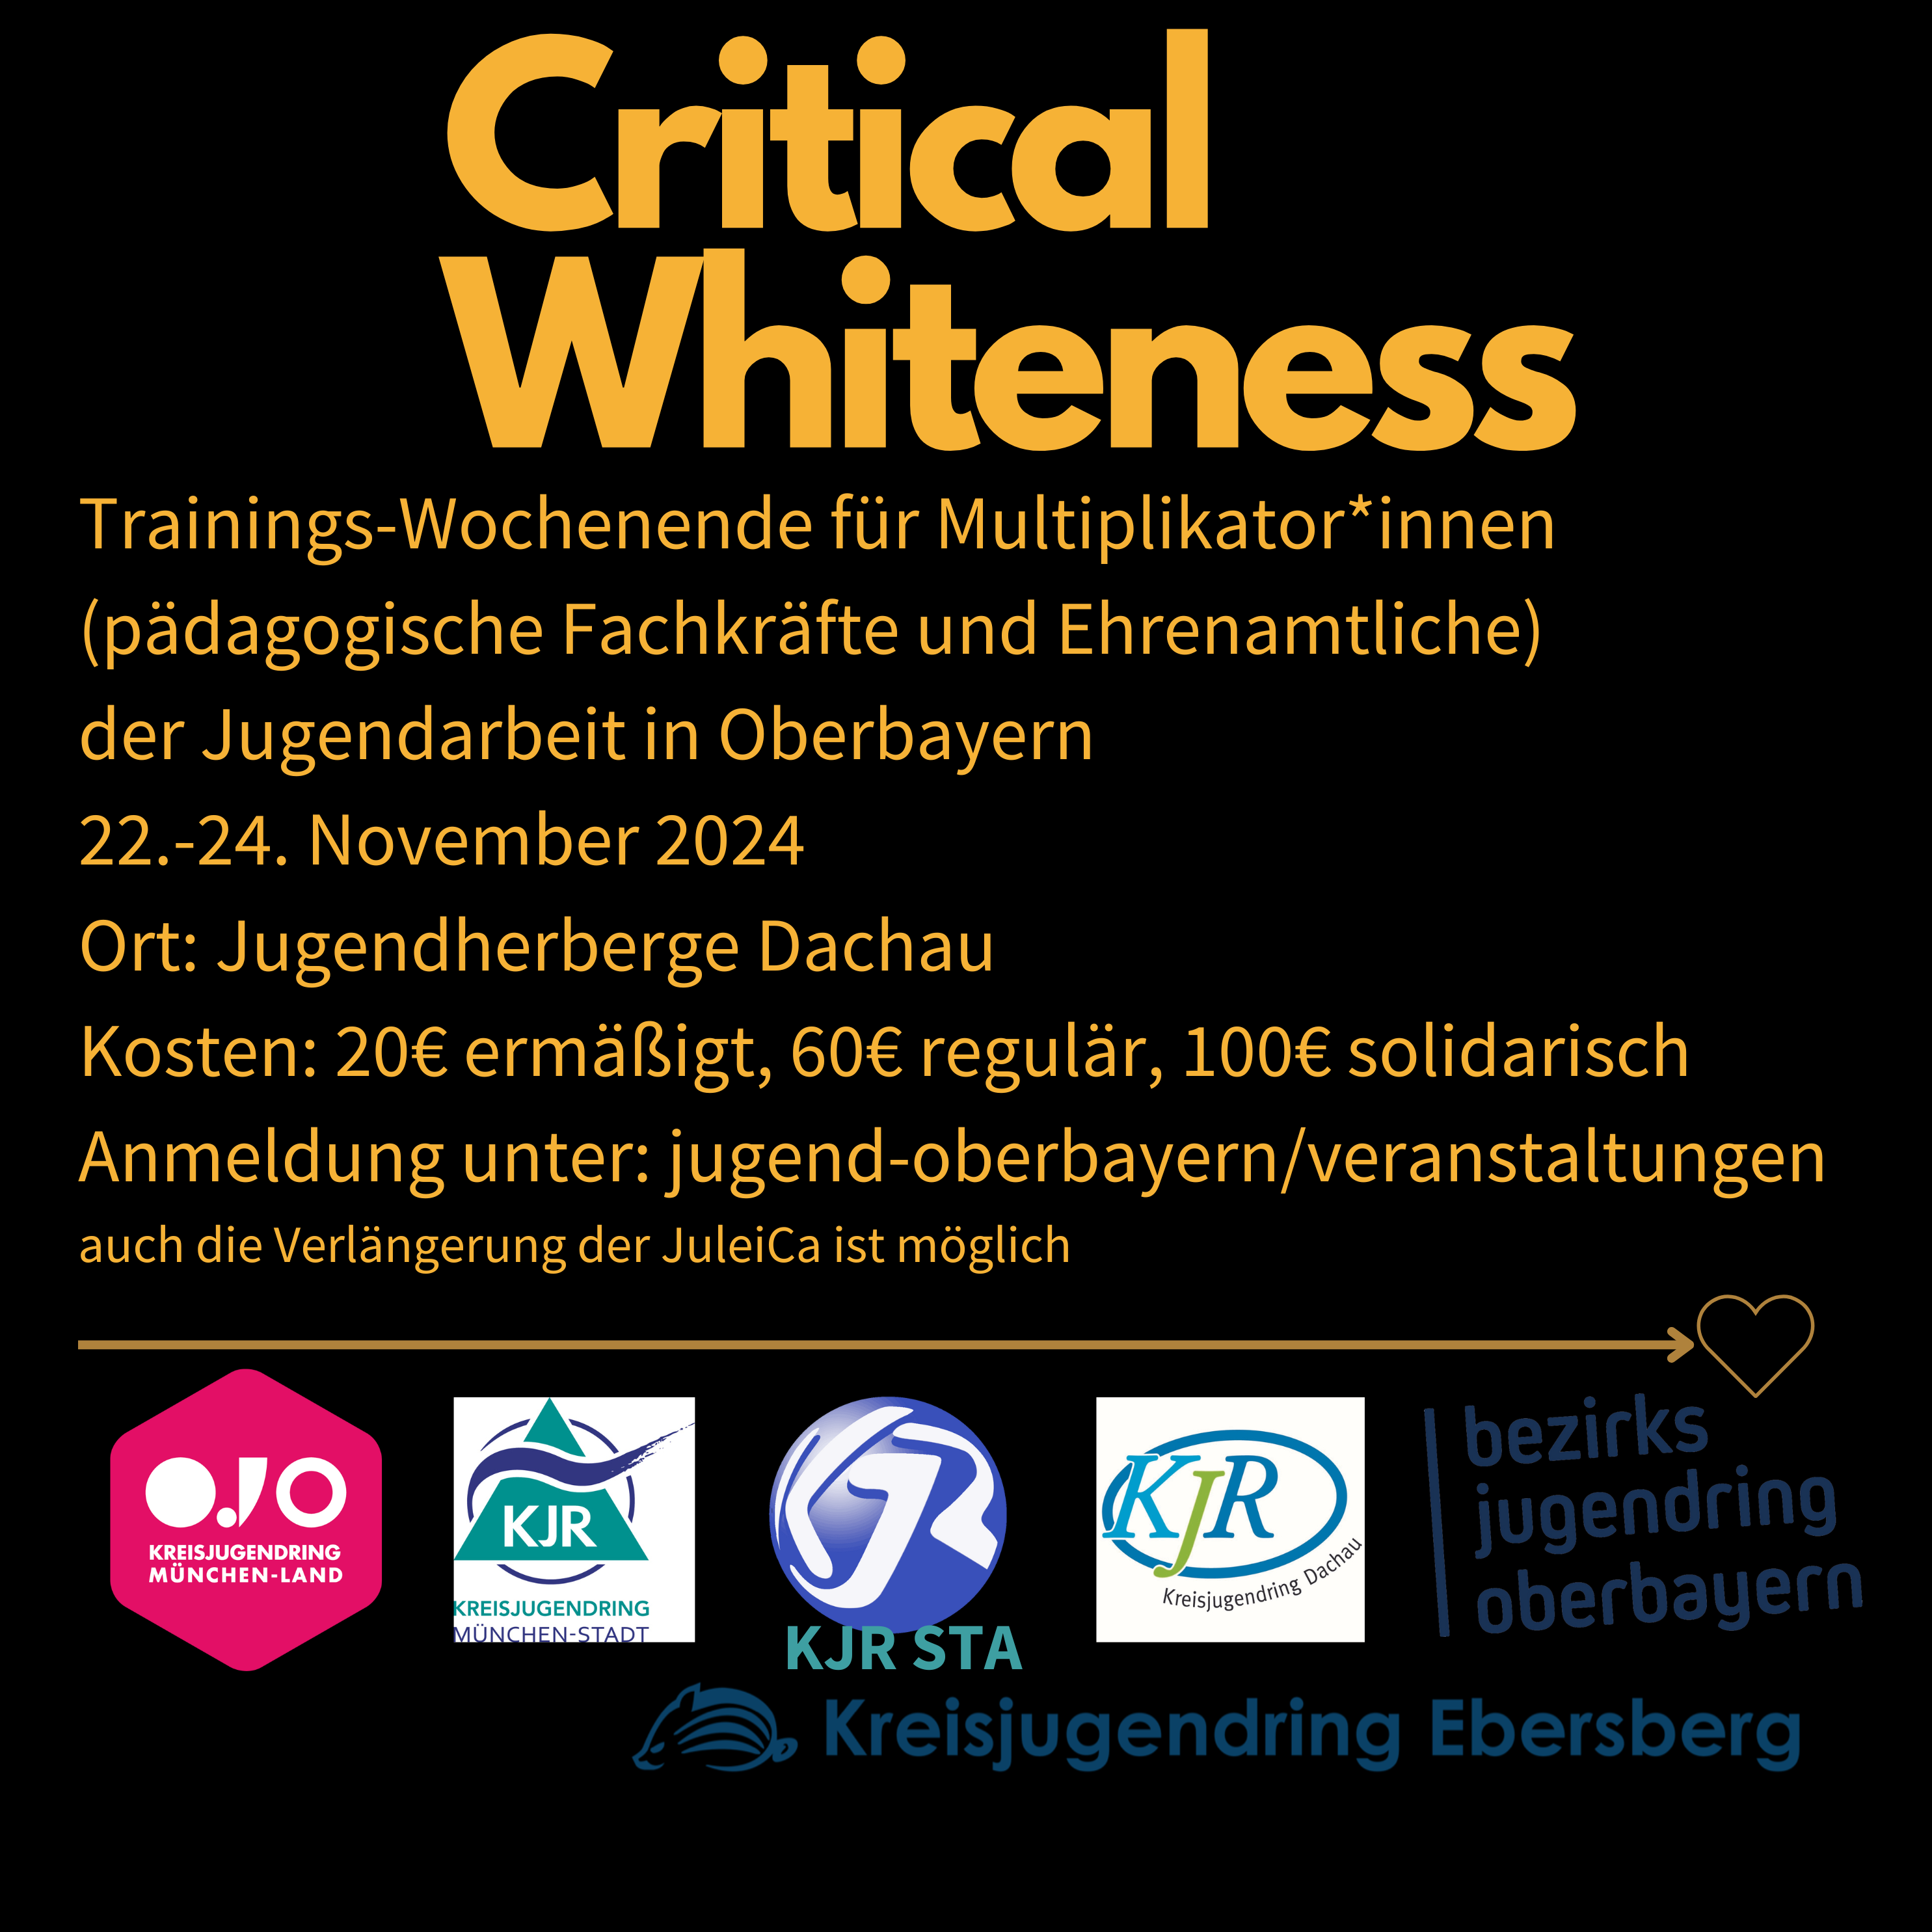 Auf dem Sharepic ist der Titel "Critical Whiteness" sowie ein paar Stichpunkte zur Anmeldung zu lesen. Man kann die 6 Logos der Kooperationspartner sehen.